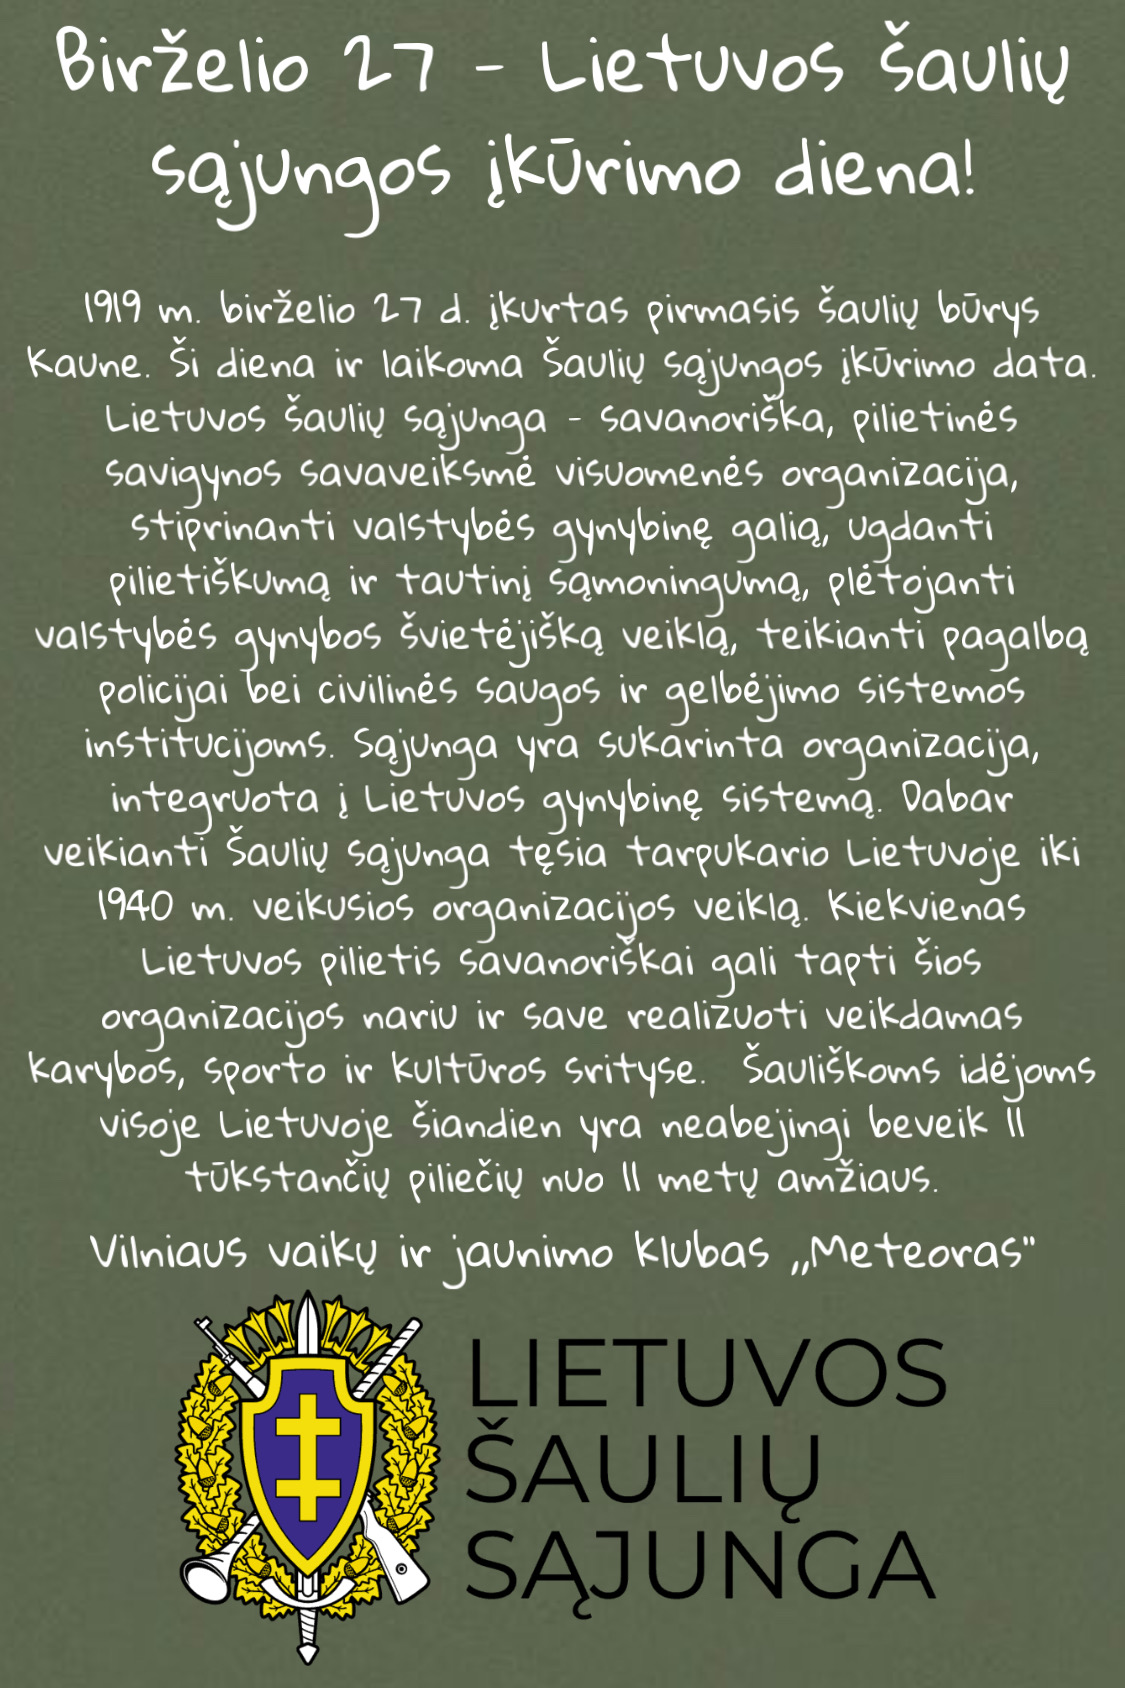 Birželio 27-oji – Lietuvos šaulių sąjungos įkūrimo diena image1 33